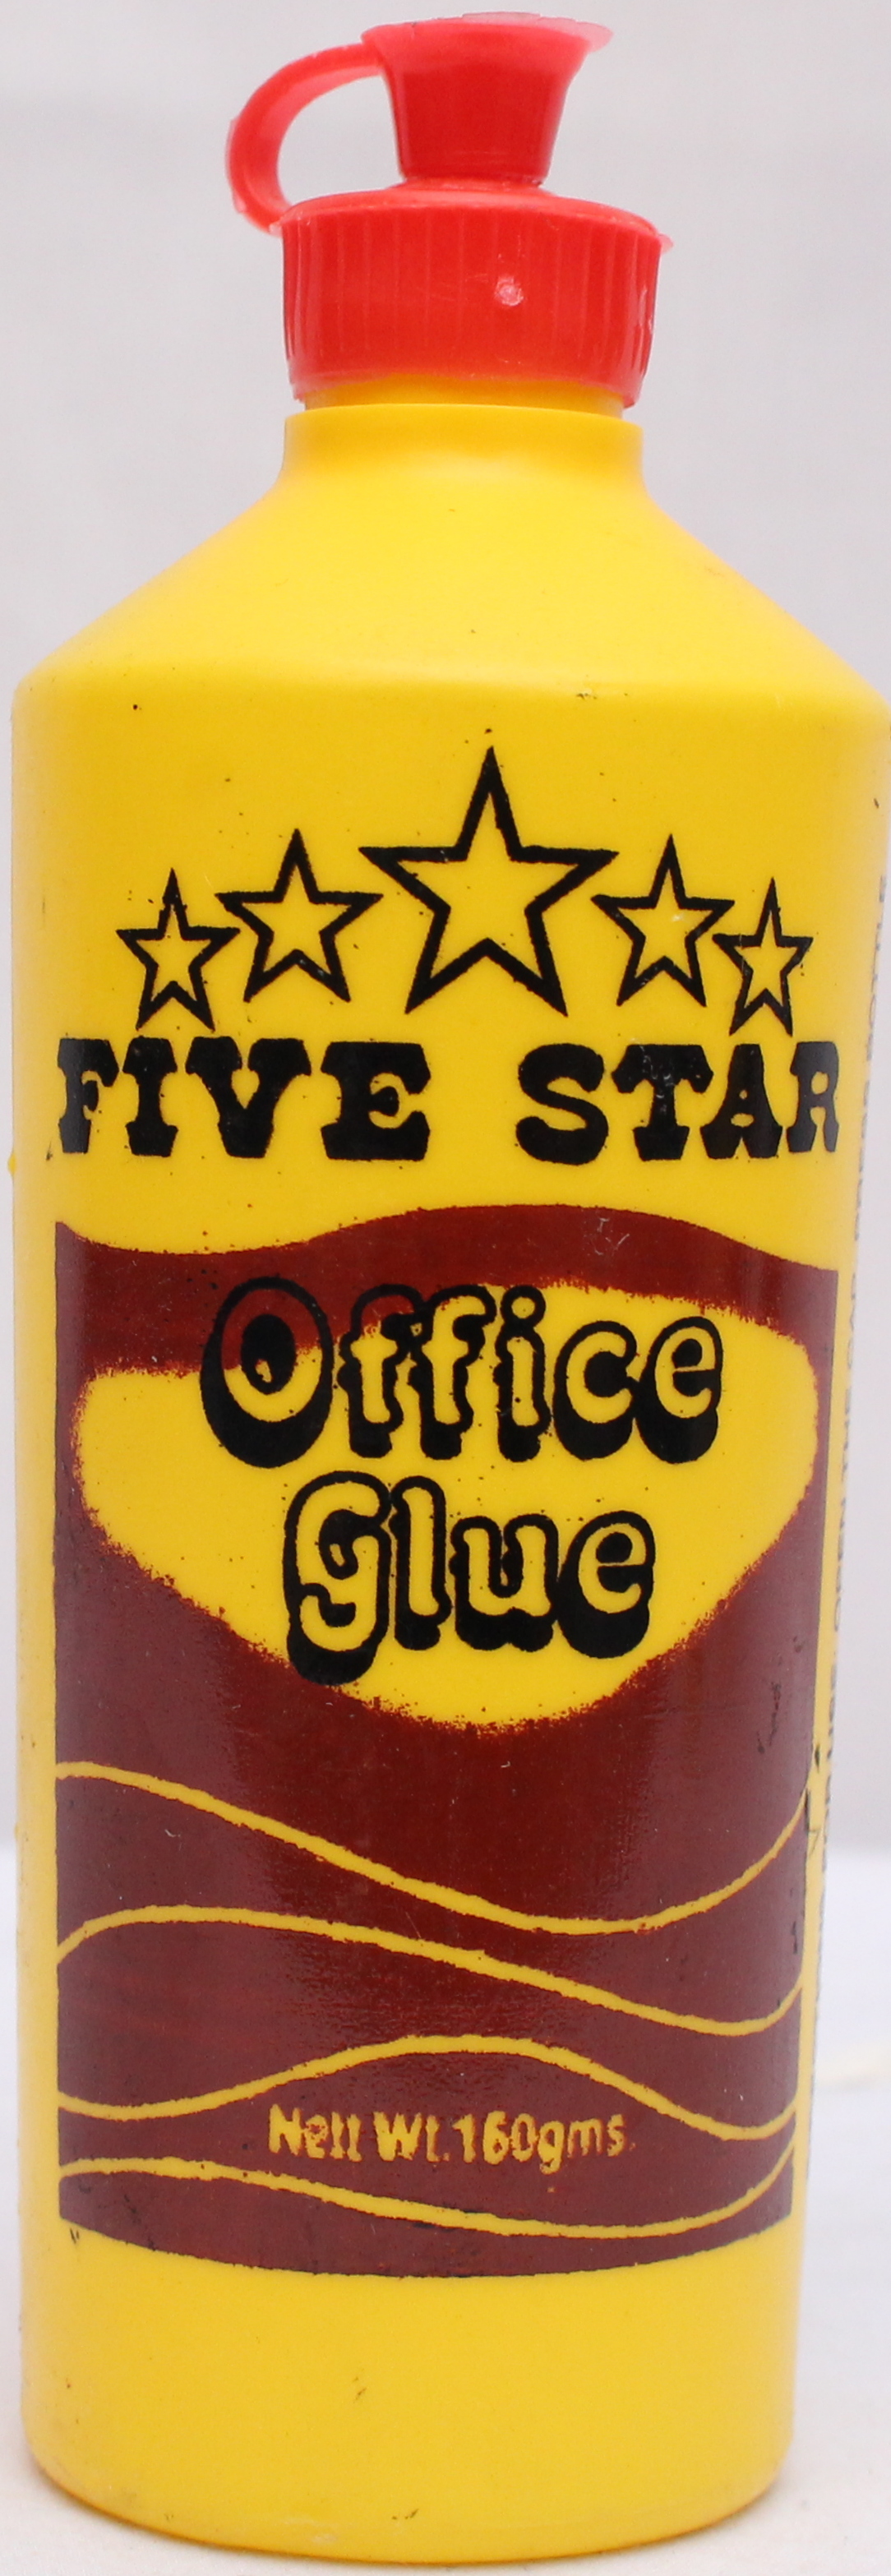 Office Glue 160gms-Fivestar | Chania School Depot